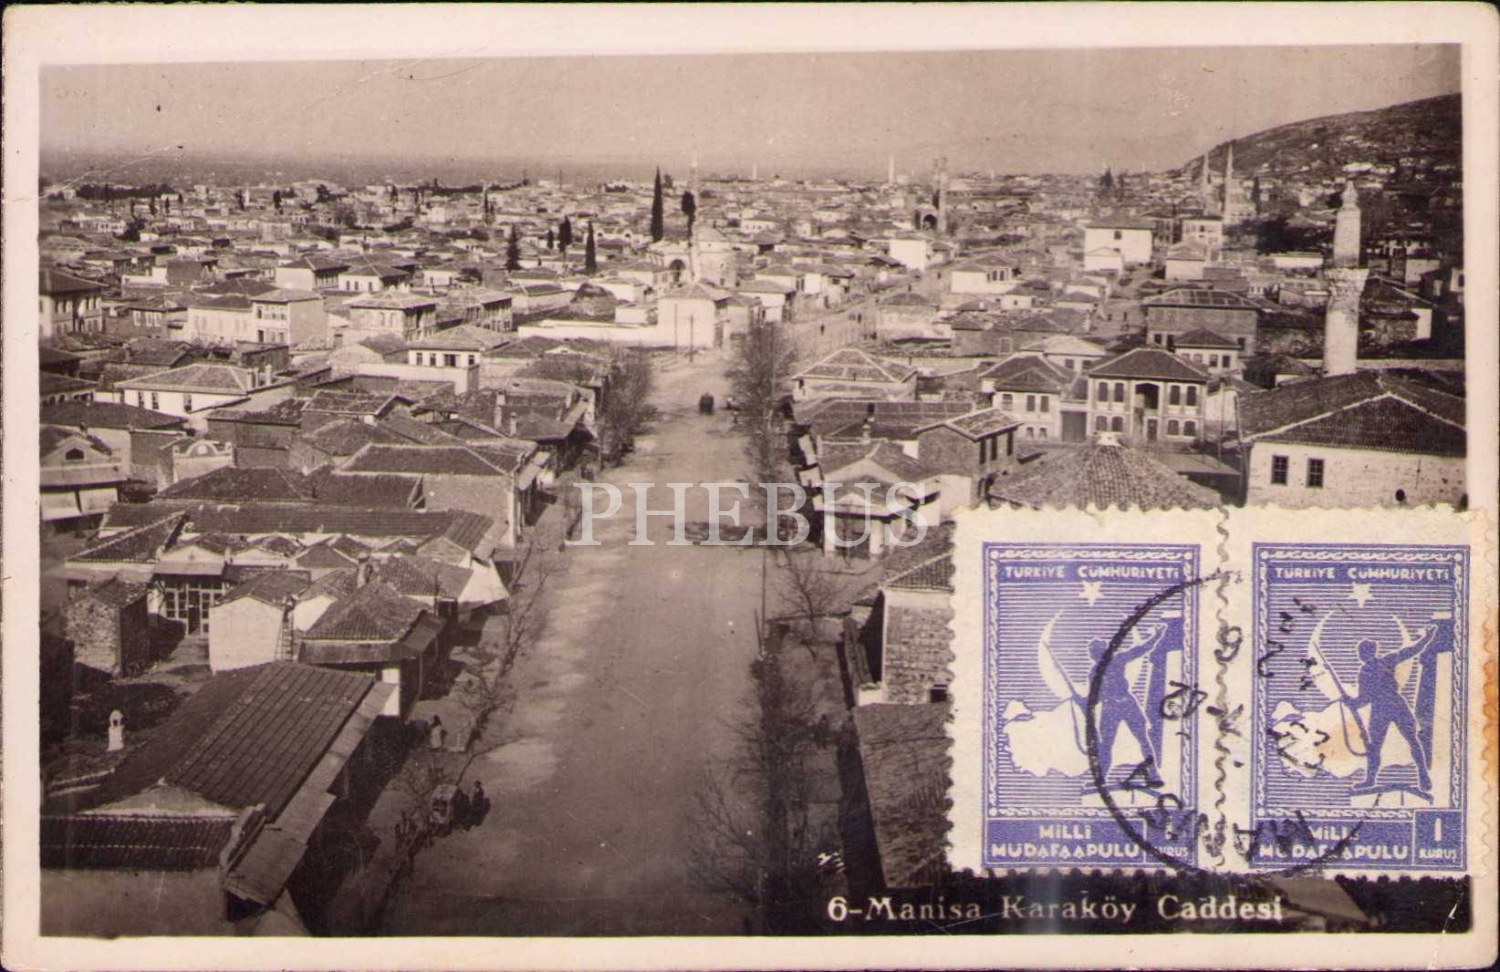 Manisa Karaköy Caddesi, 1942 tarihli postadan geçmiş kart